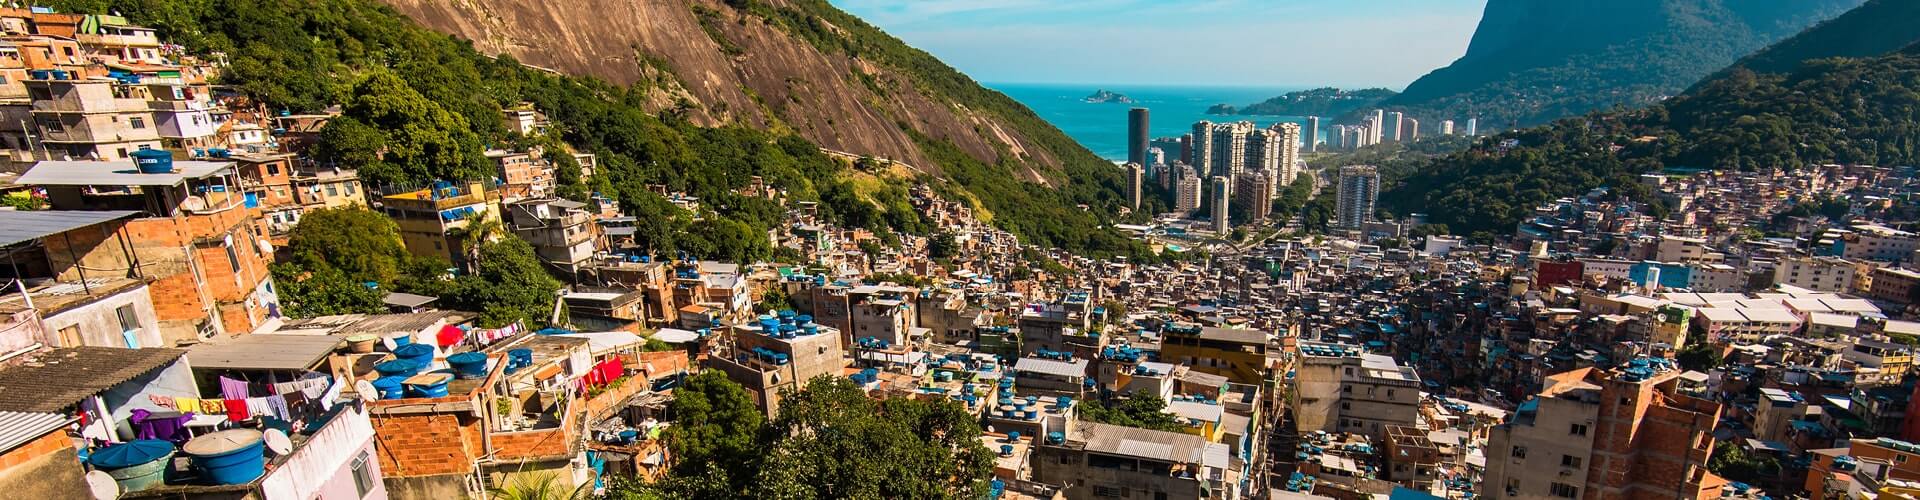 Favela among the mountains in Rio de Janeiro